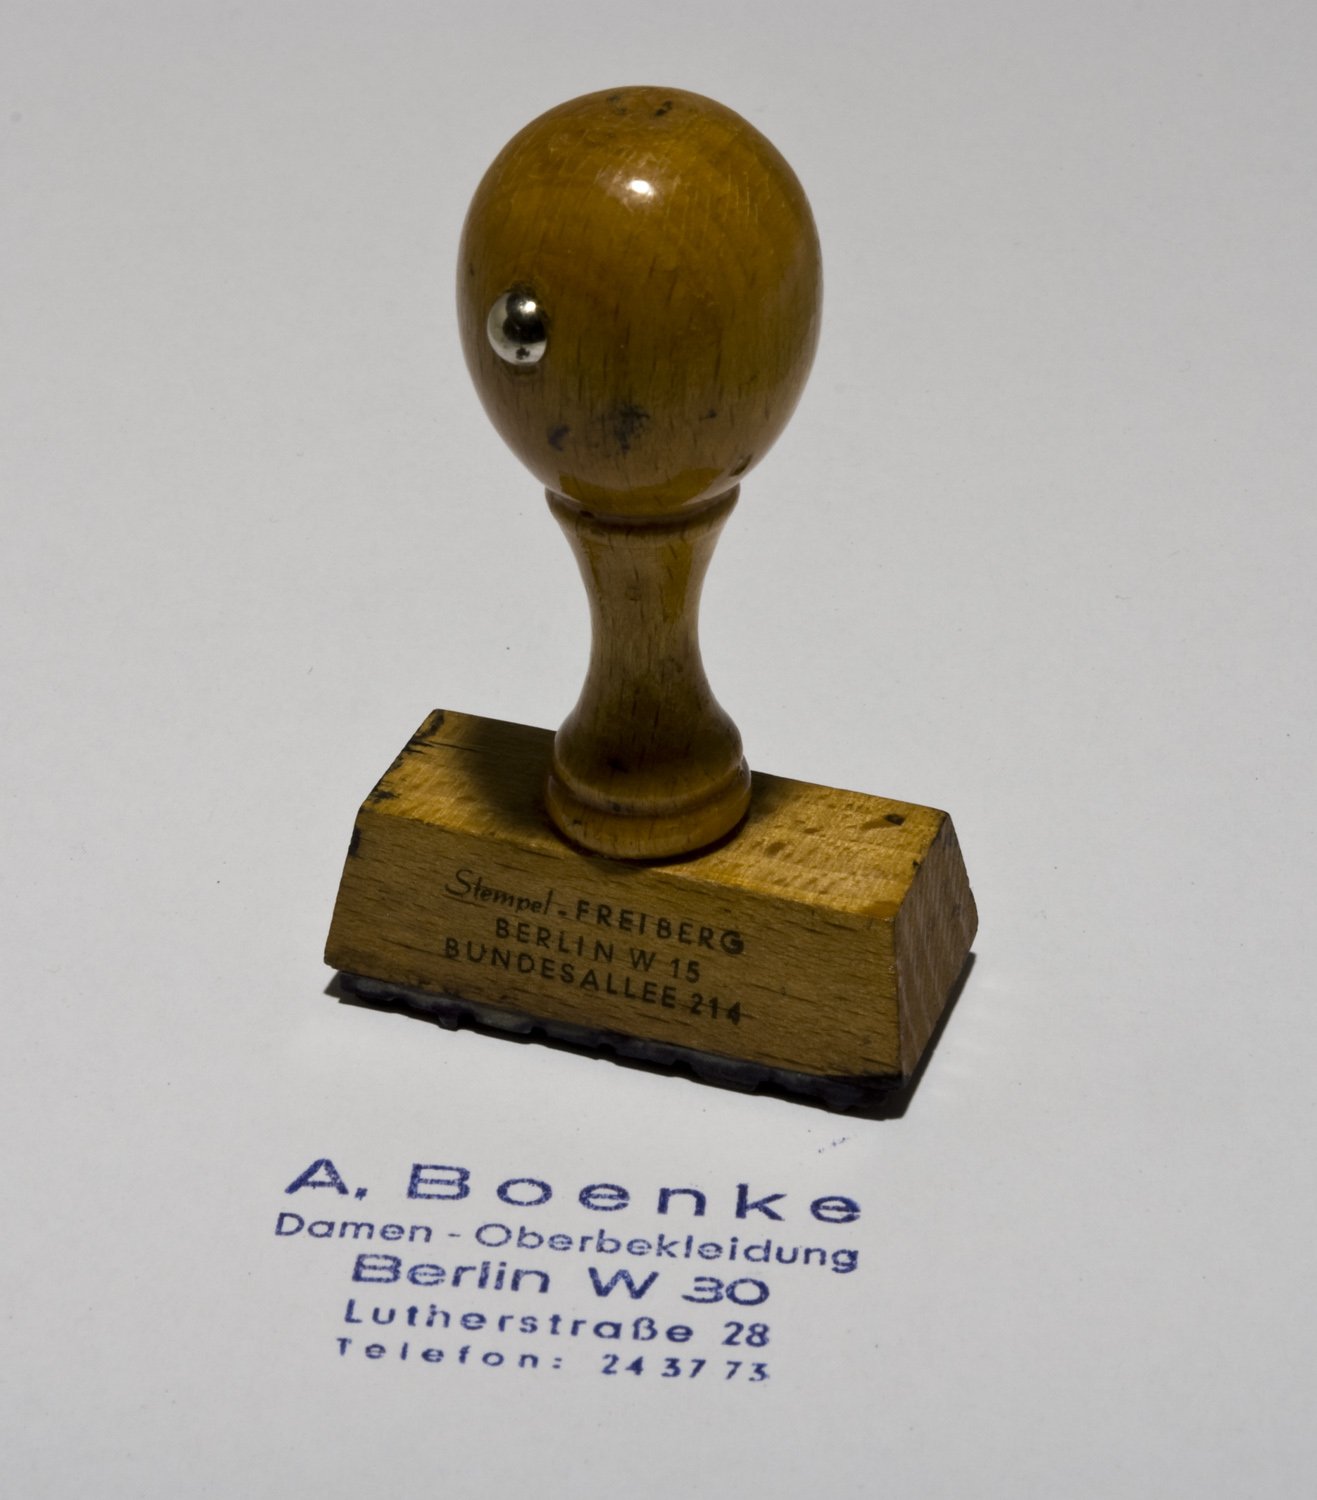 Holzstempel "A. Boenke Damen - Oberbekleidung Berlin W 30 ...." (Stiftung Domäne Dahlem - Landgut und Museum, Weiternutzung nur mit Genehmigung des Museums CC BY-NC-SA)